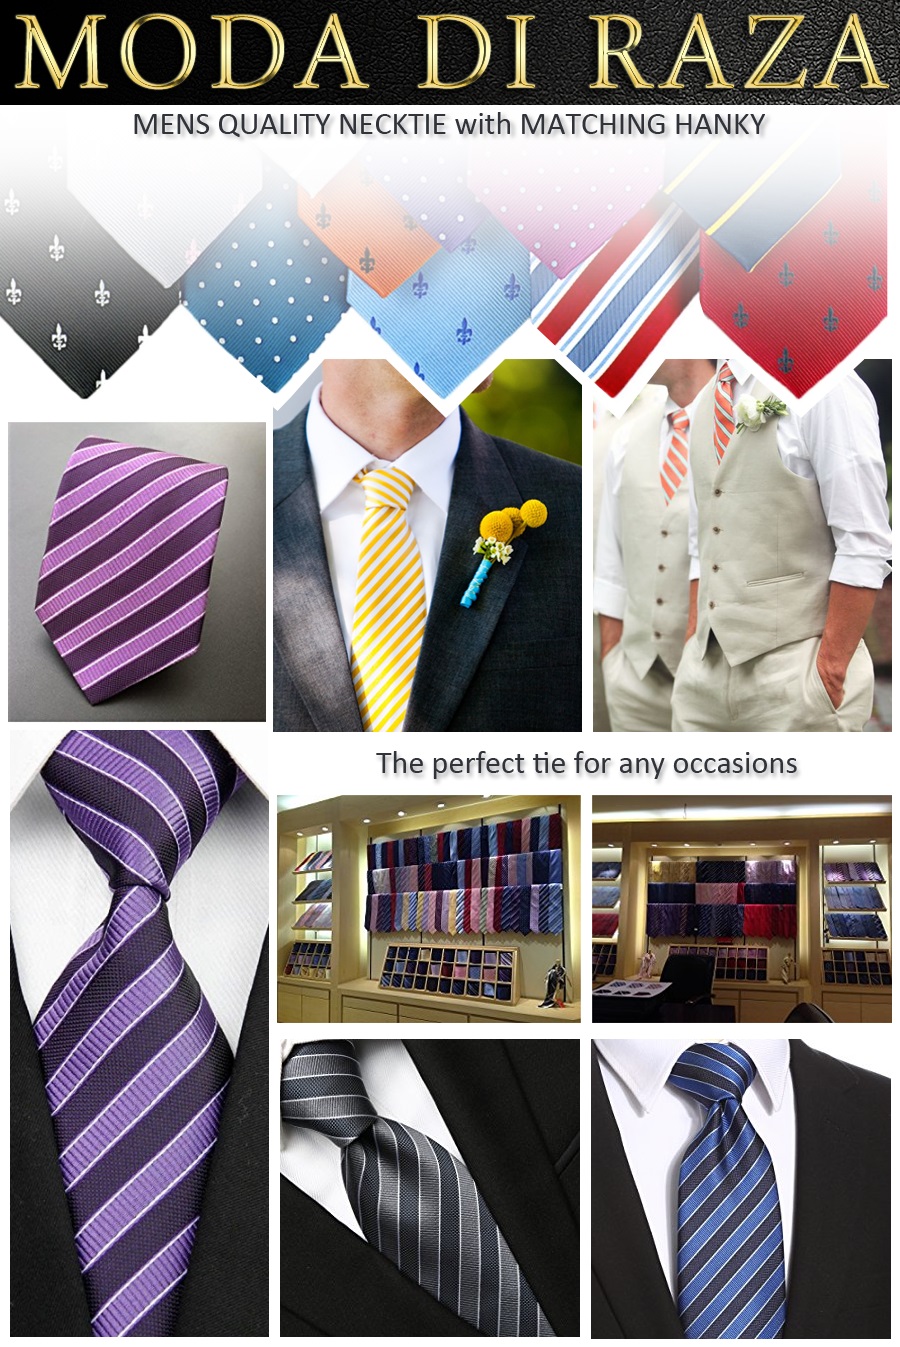 Moda Di Raza - Men's Skinny Necktie 2 Slim Tie Casual Business Formal